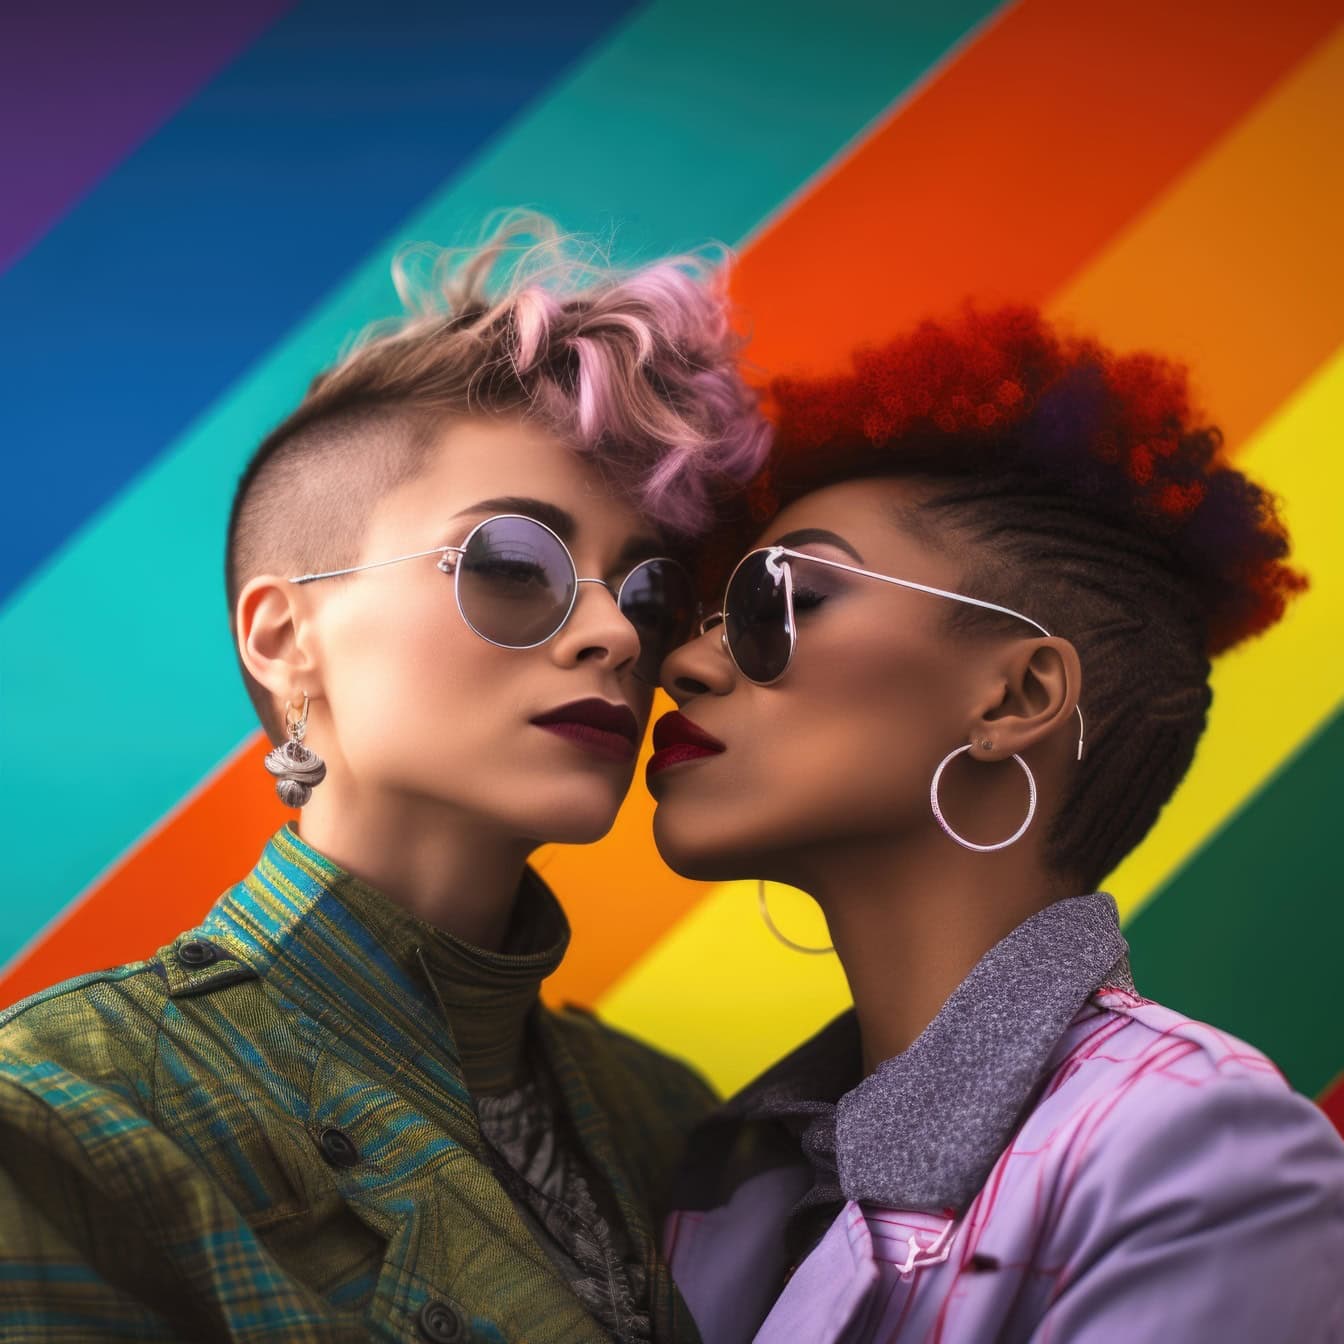 Dvije tinejdžerice lezbijke s pozadinom u duginim bojama, ilustracija slobode LGBT zajednice